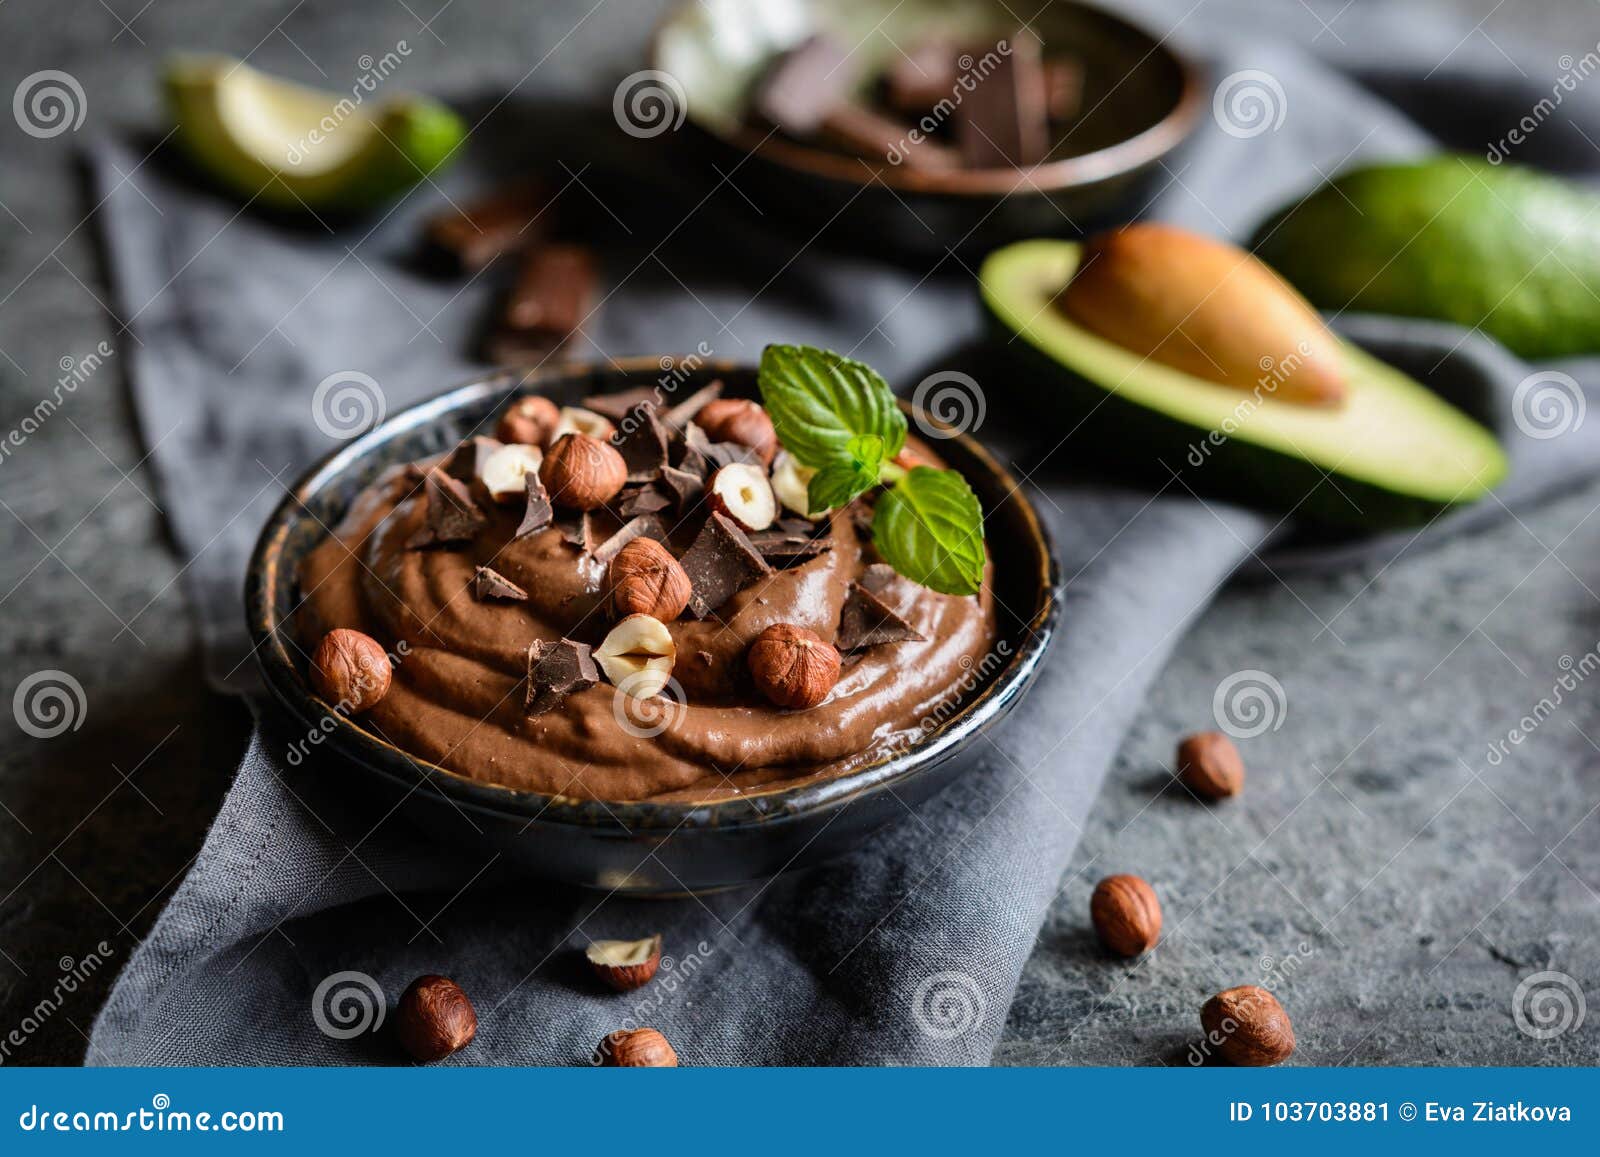 raw avocado chocolate mousse with hazelnuts